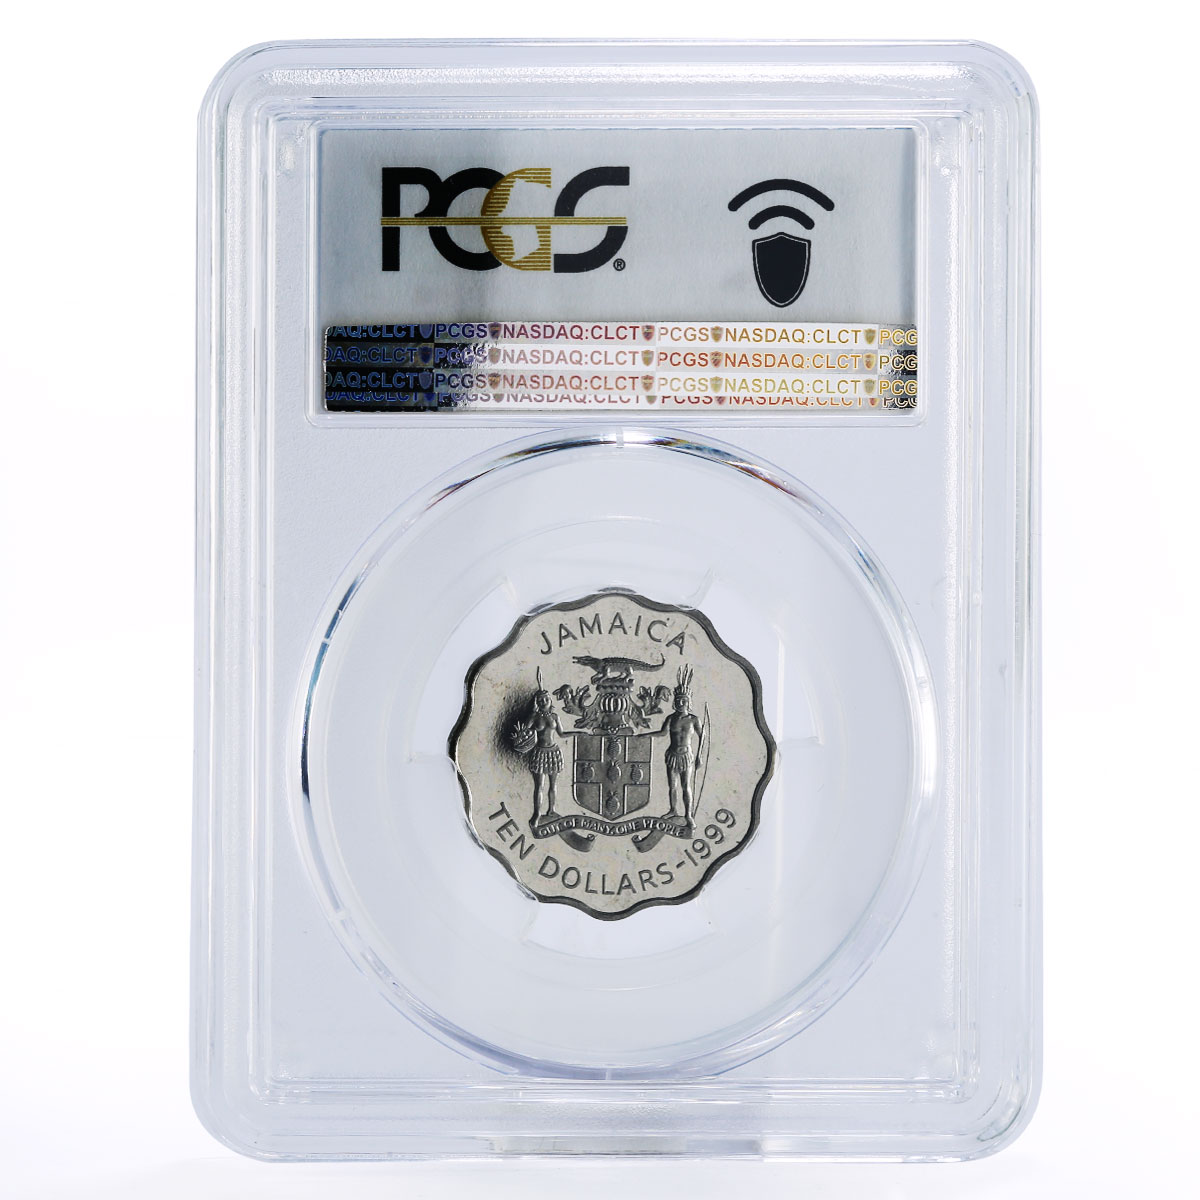 Jamaica 10 dollars George William Gordon PR67 PCGS nickel coin 1999